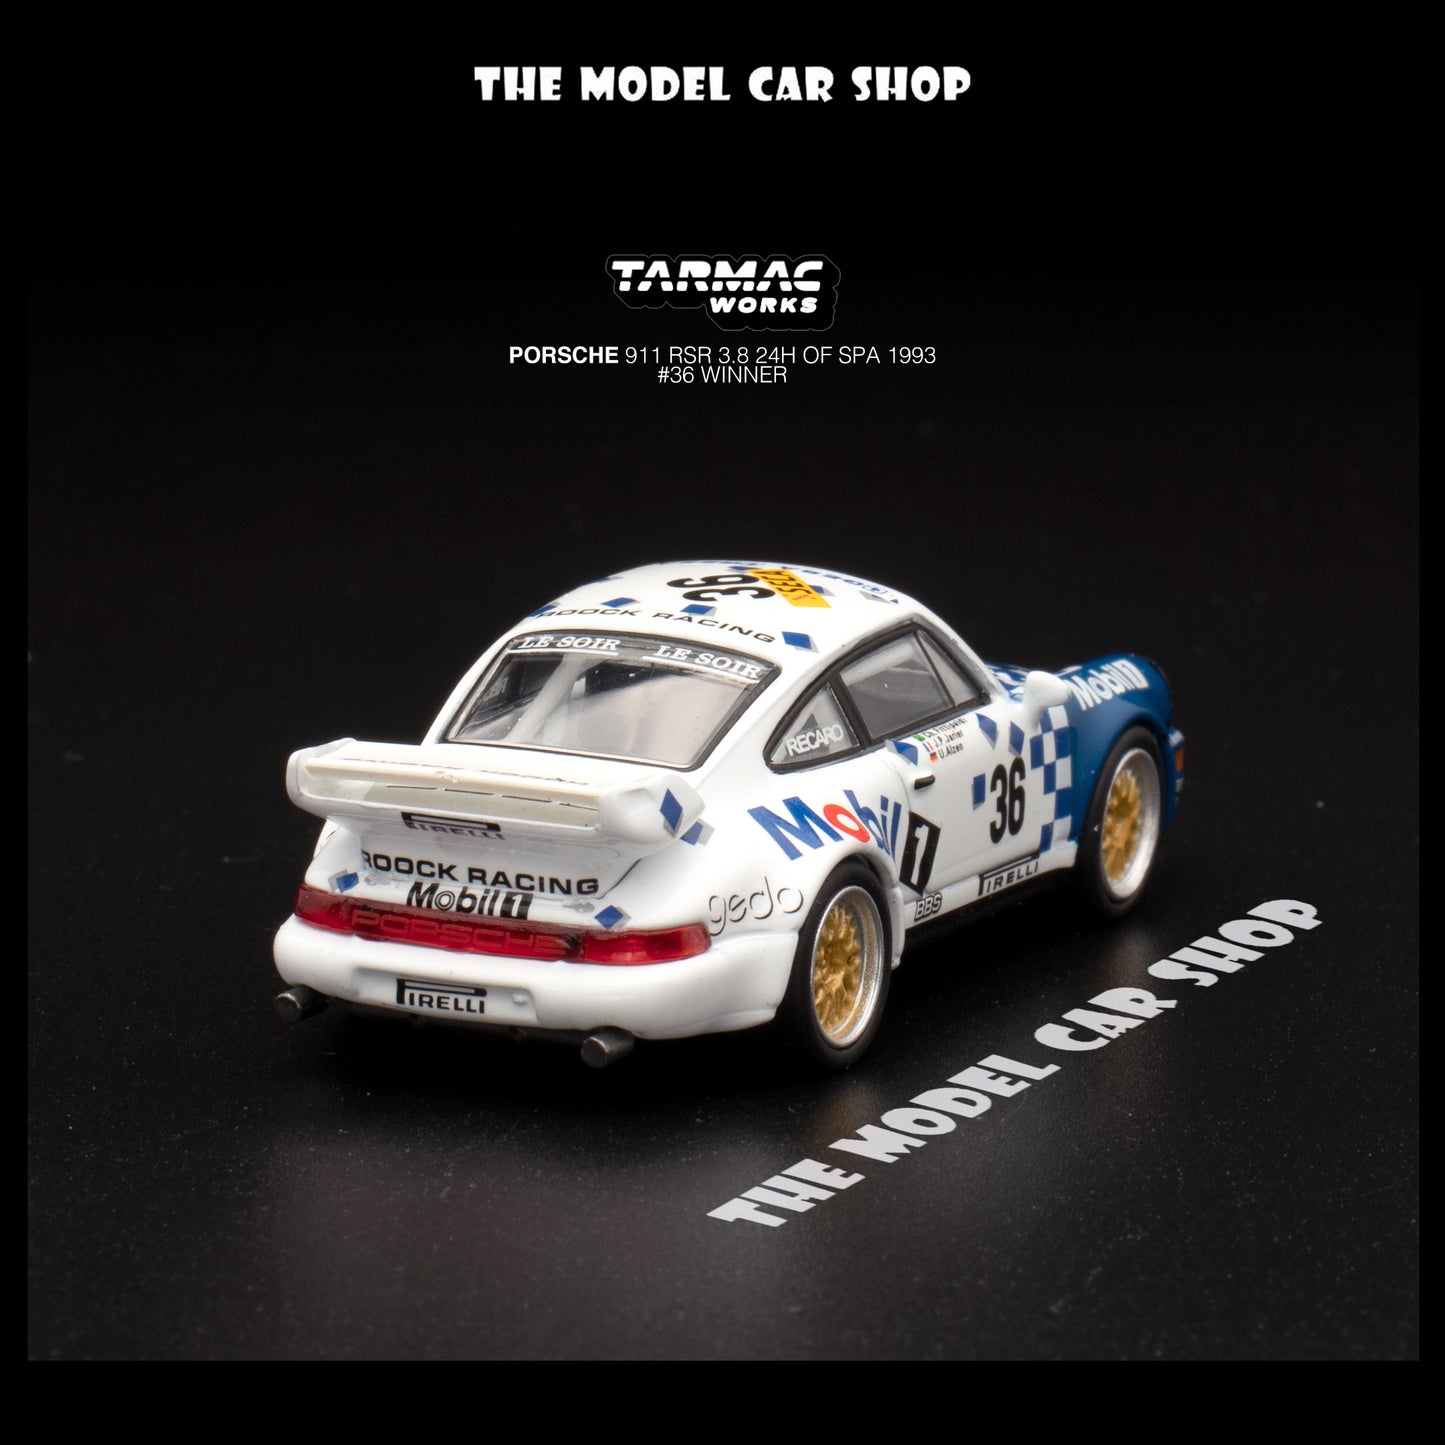 [Tarmac Works] Porsche 911 RSR 3.8 24h of SPA 1993 # 36 Winner